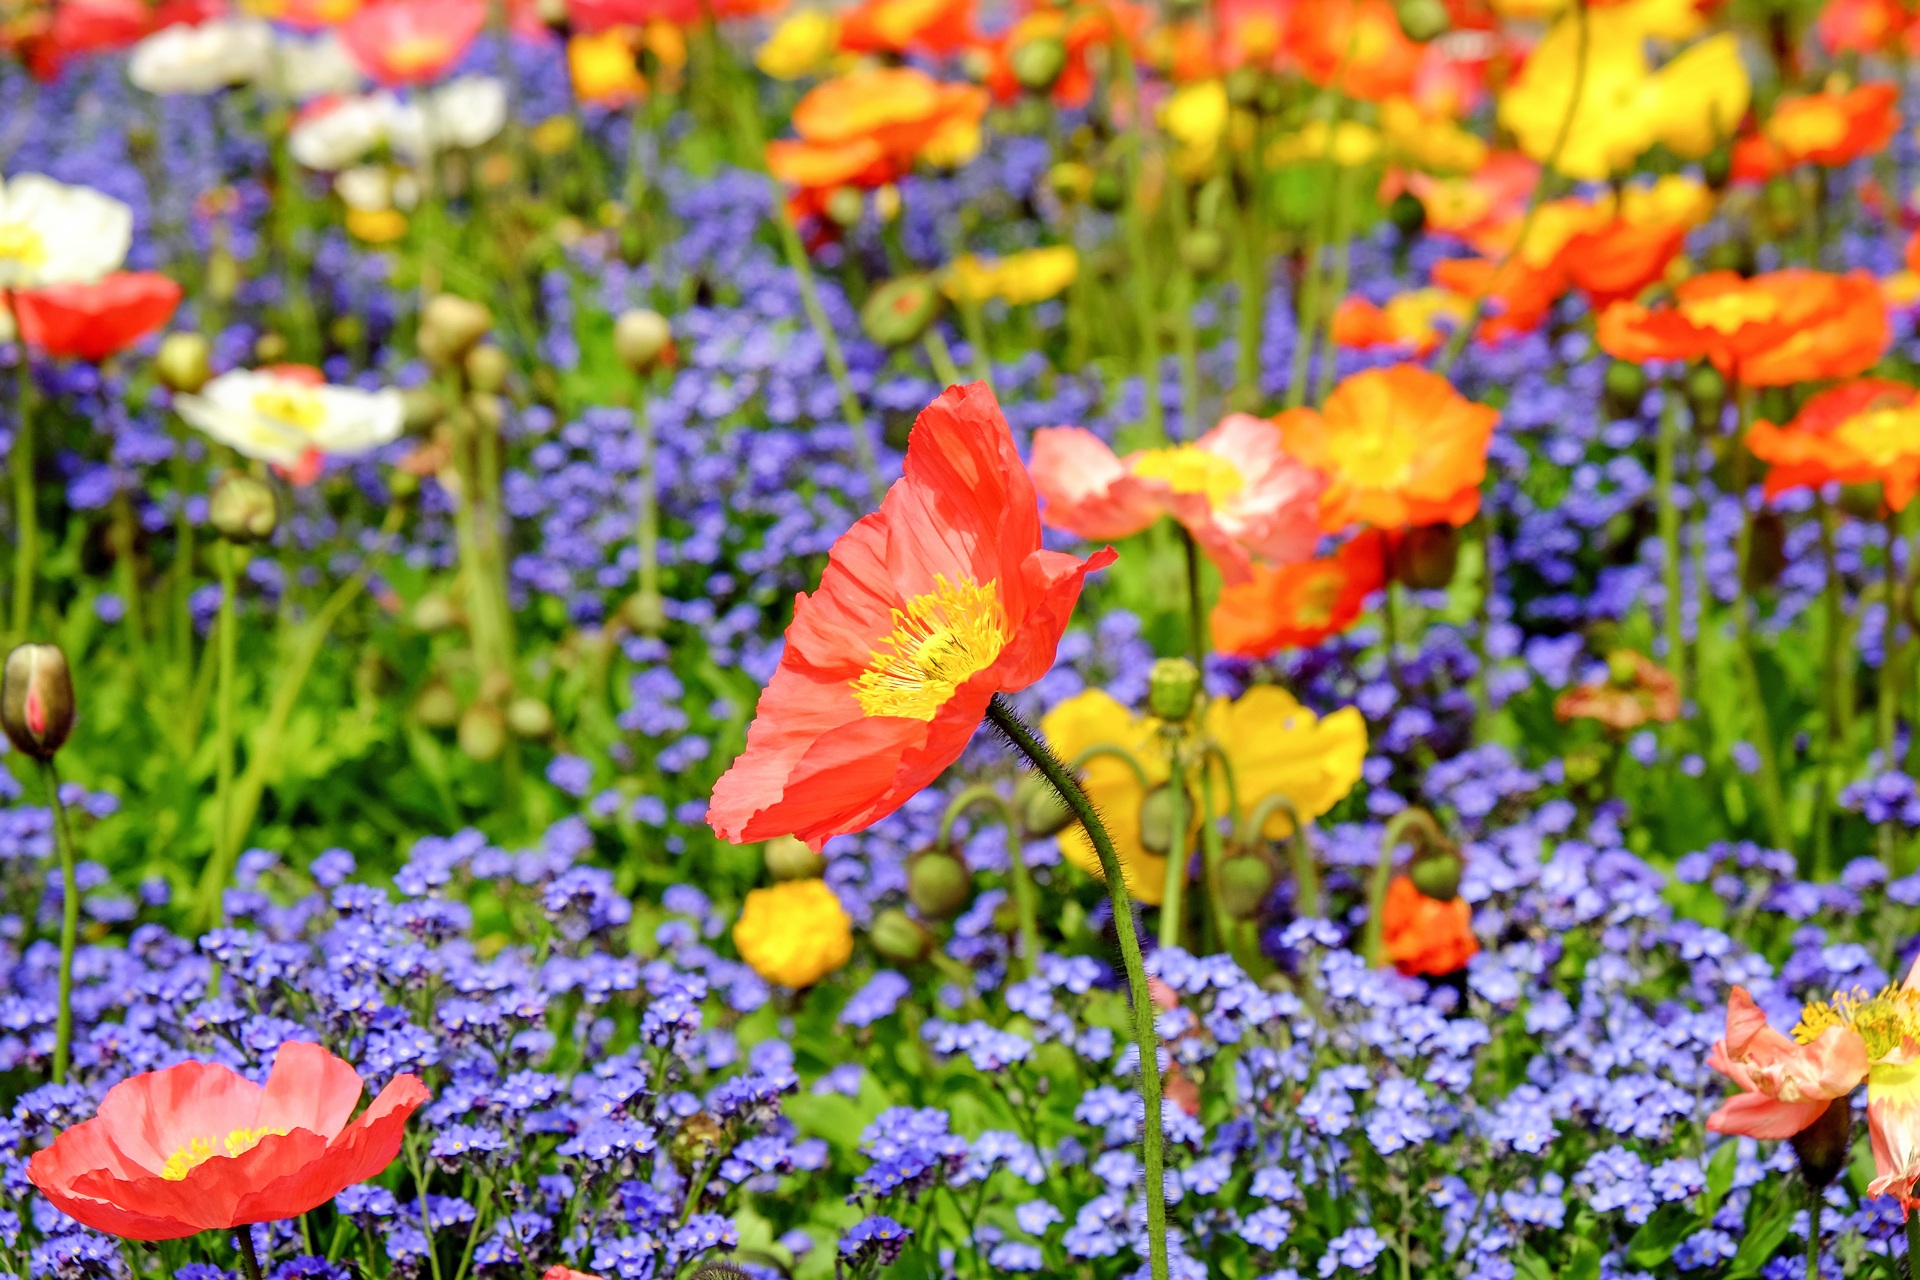 Descarga gratuita de fondo de pantalla para móvil de Naturaleza, Flor, Prado, Flor Amarilla, Flor Purpura, Flor Roja, Tierra/naturaleza.